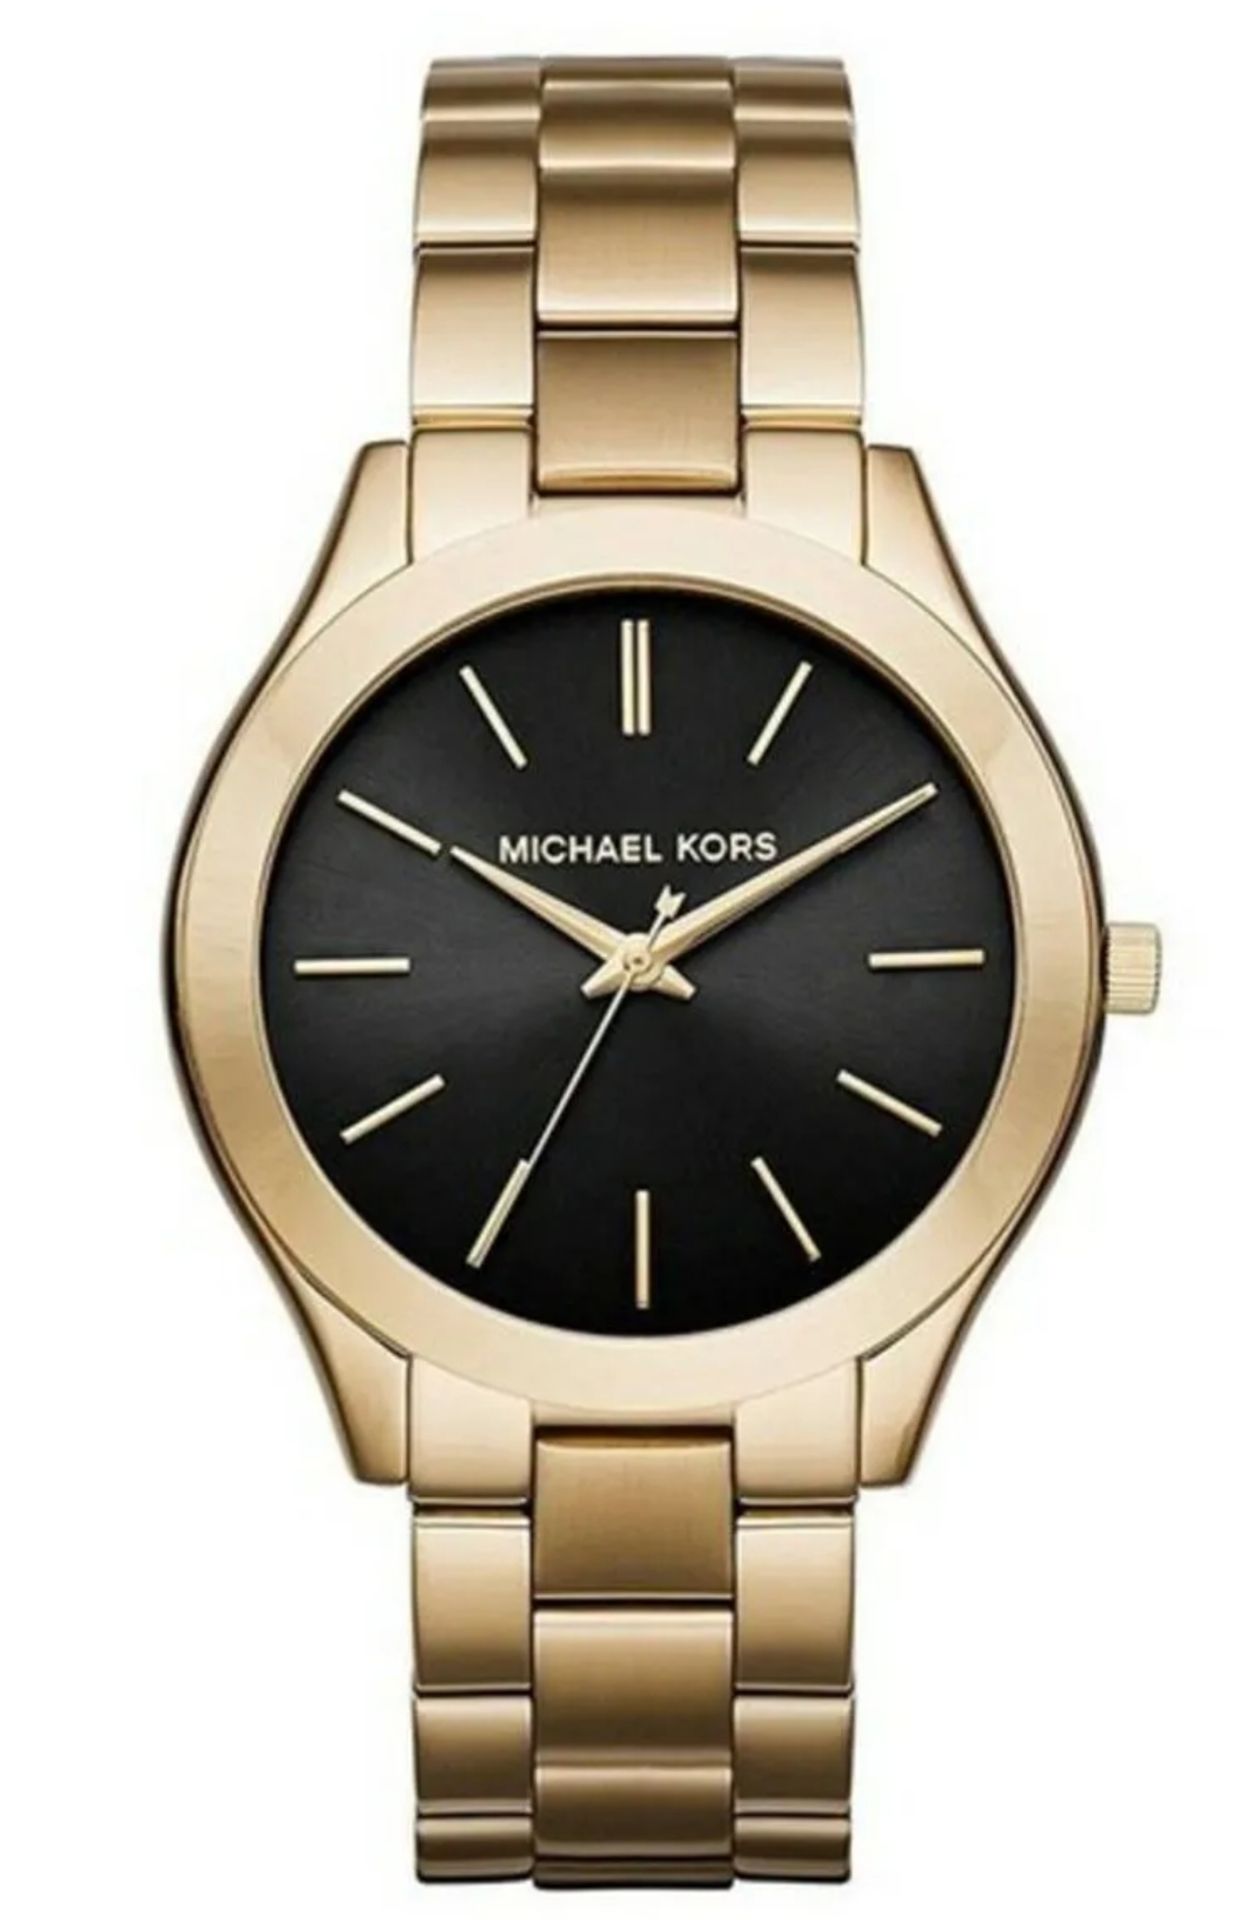 Michael Kors MK3478 Ladies Slim Runway Watch Gold Bracelet Black Dial